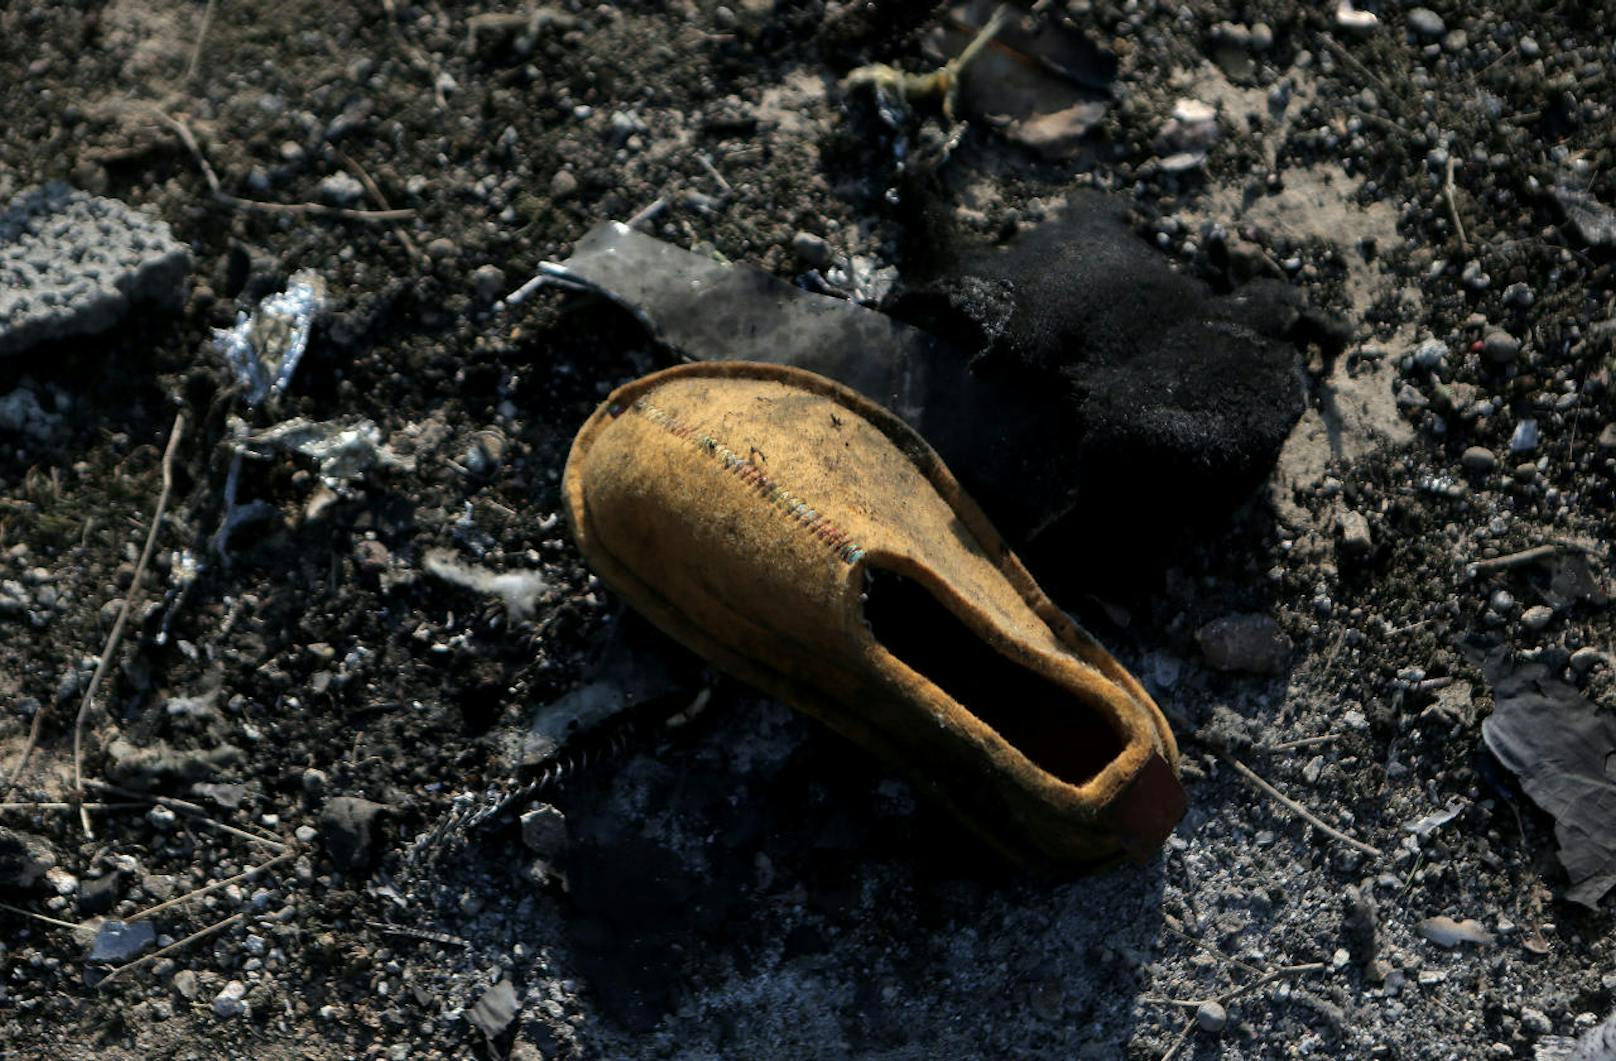 Der Iran hat zugegeben, dass das eigene Militär "versehentlich" ein ukrainisches Passagierflugzeug abgeschossen hat. 176 Menschen an Bord kamen dabei ums Leben. Das sind die Bilder der Absturzstelle >>